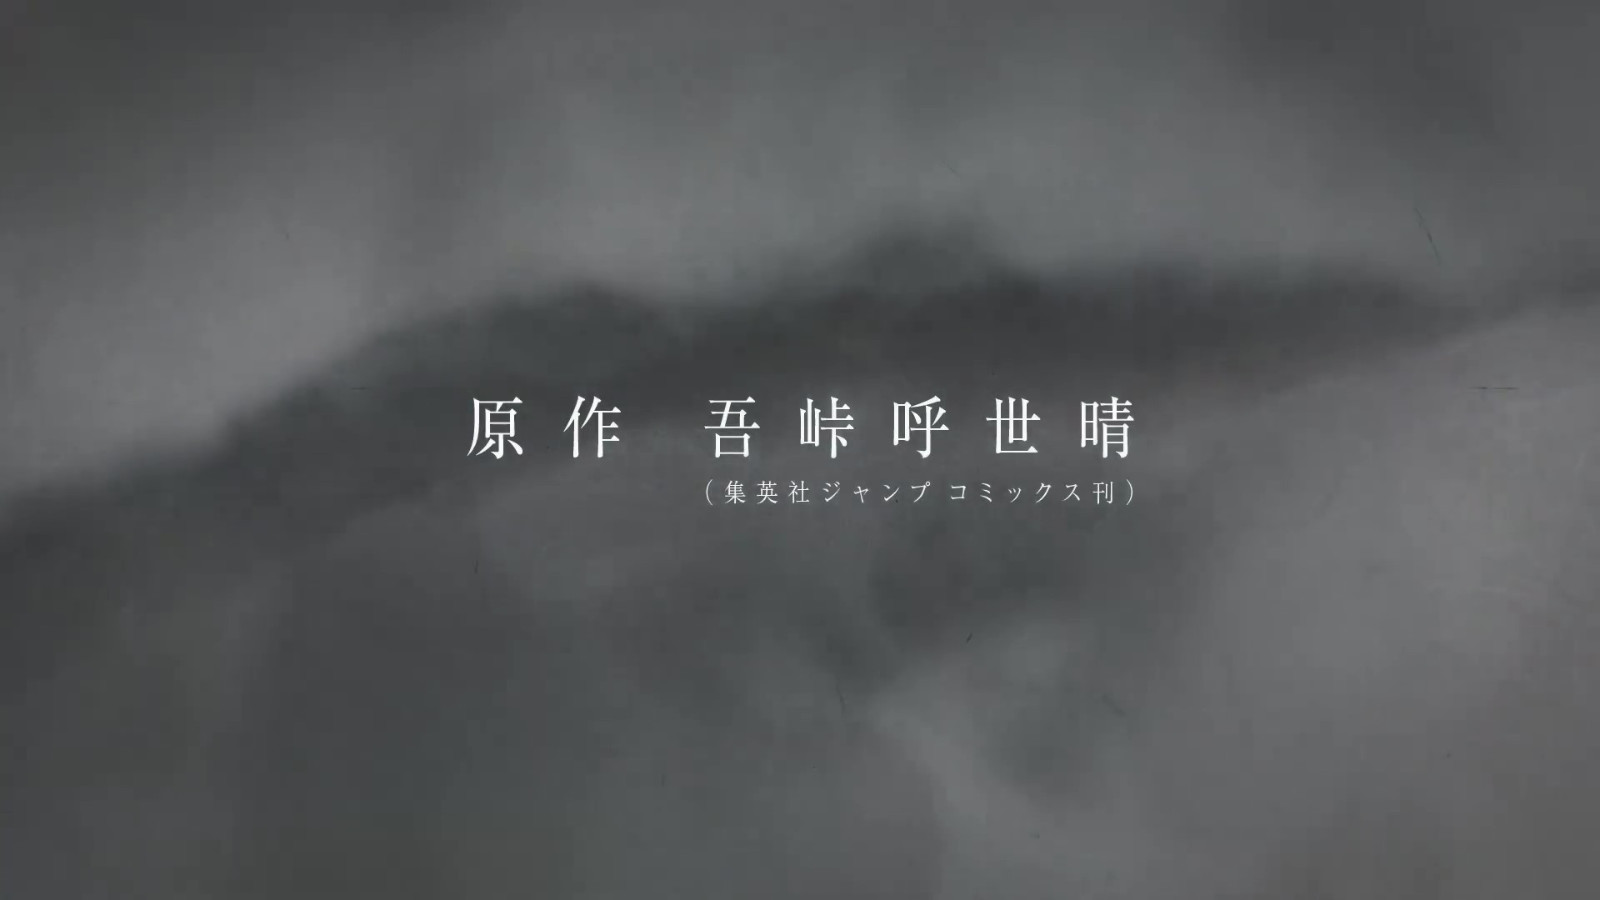 《鬼灭之刃》第三季「锻刀村篇」 第1弹PV公布